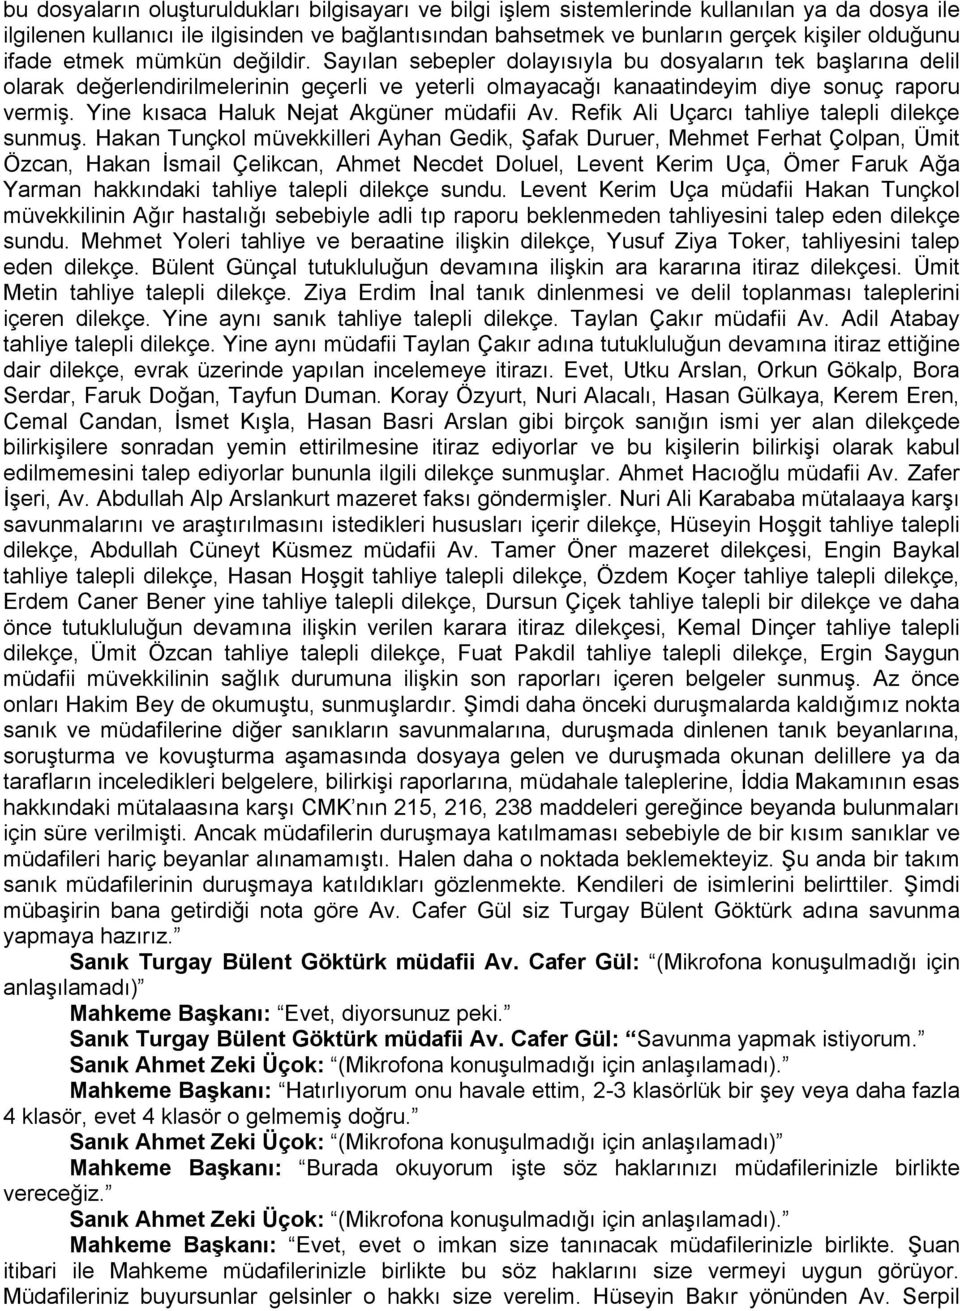 Yine kısaca Haluk Nejat Akgüner müdafii Av. Refik Ali Uçarcı tahliye talepli dilekçe sunmuş.